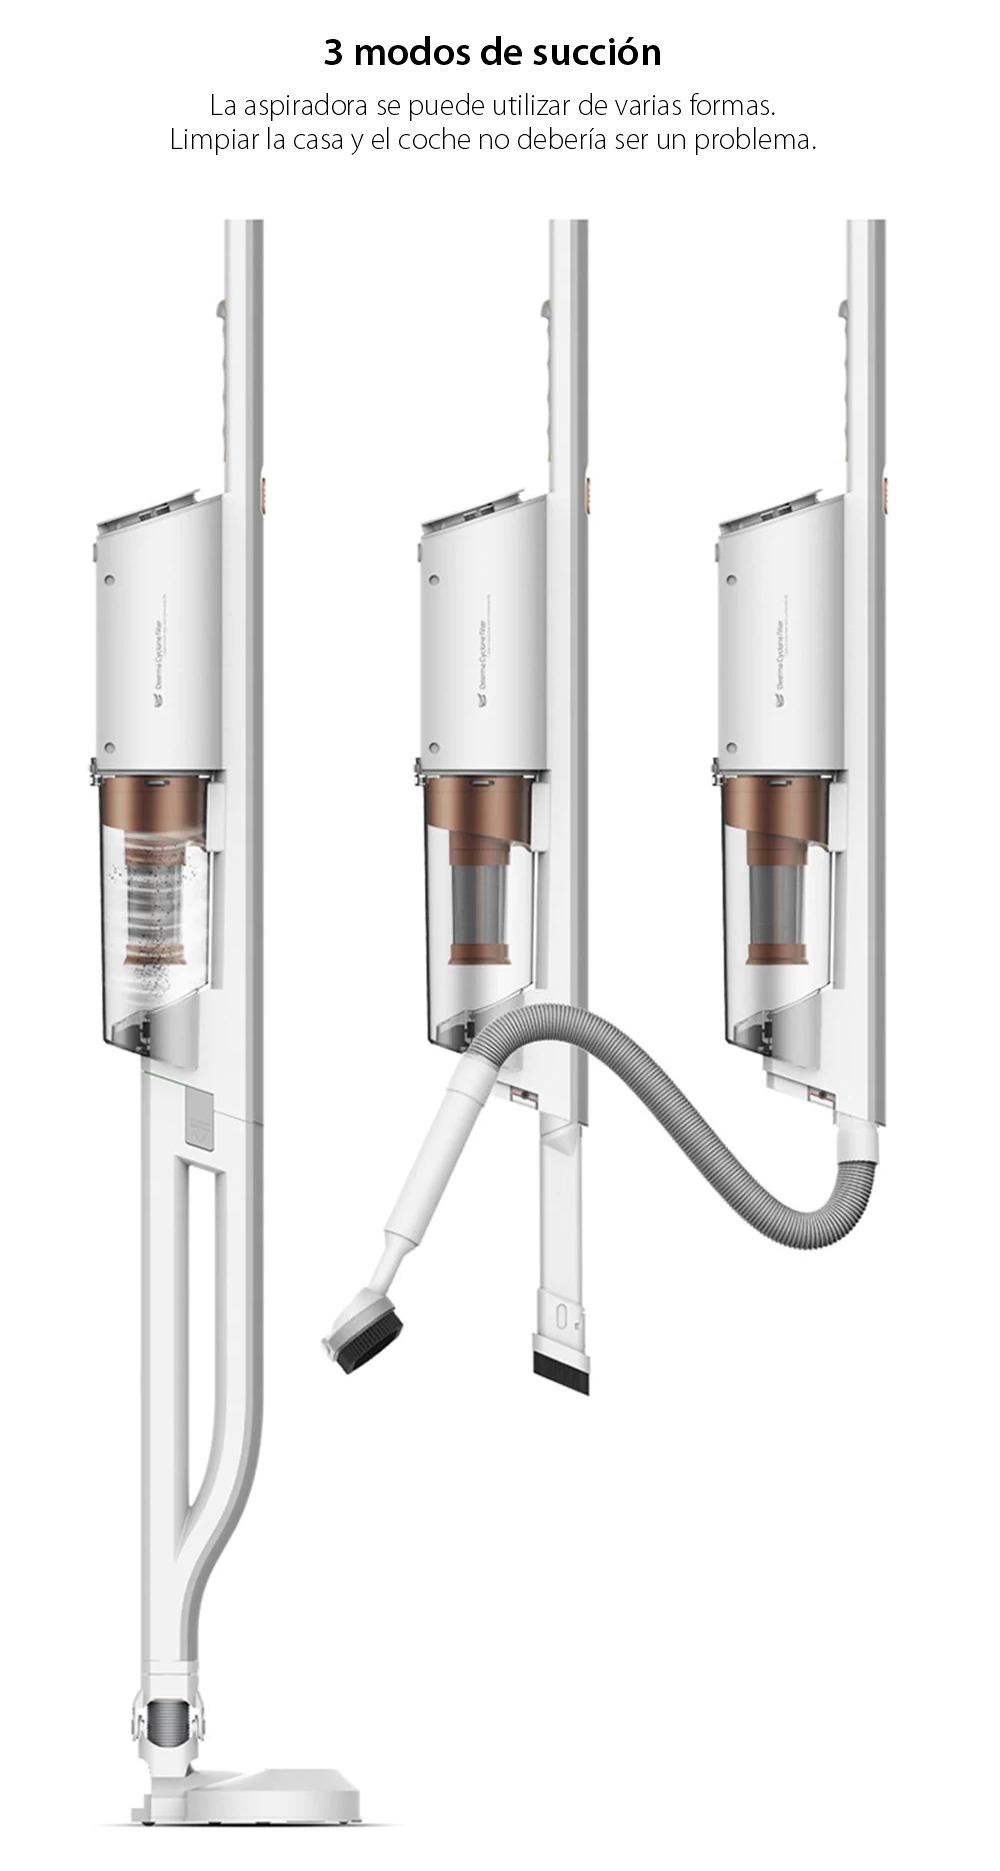 Deerma DX800 – Aspirador vertical, blanco, potencia 600 W, capacidad 800 mL, 4 etapas de filtración